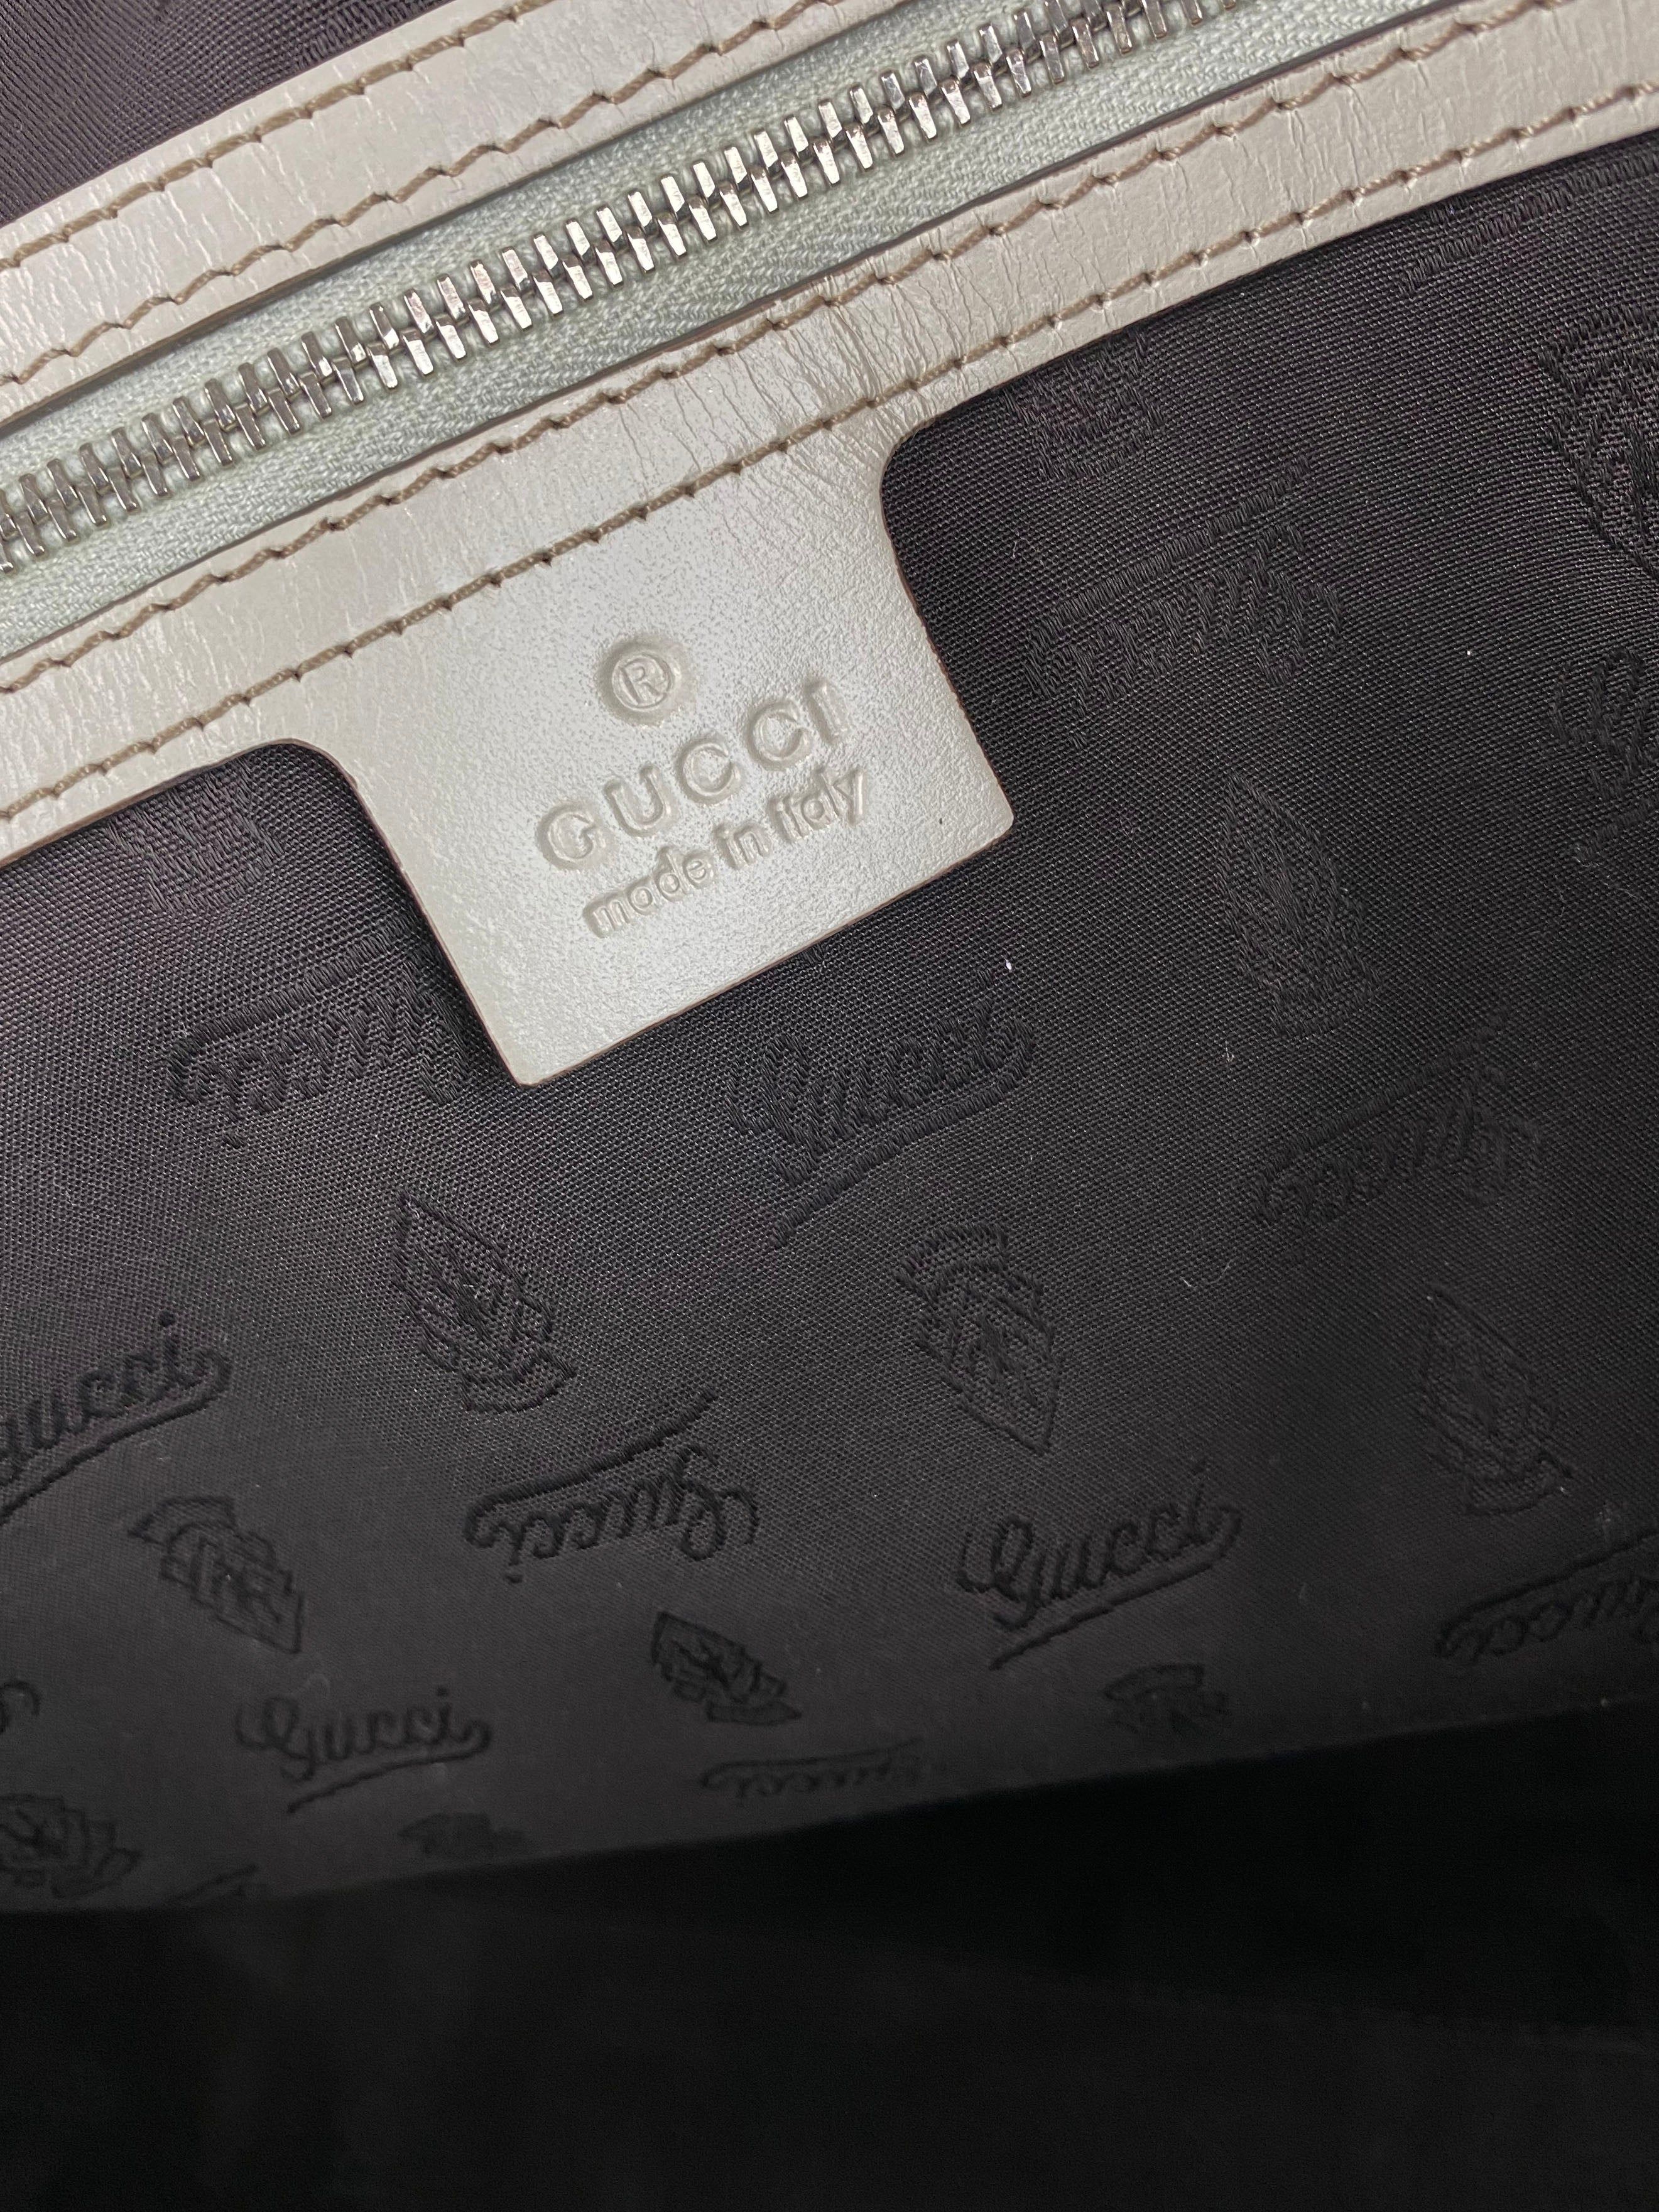 Gucci White Monogram Tote Bag